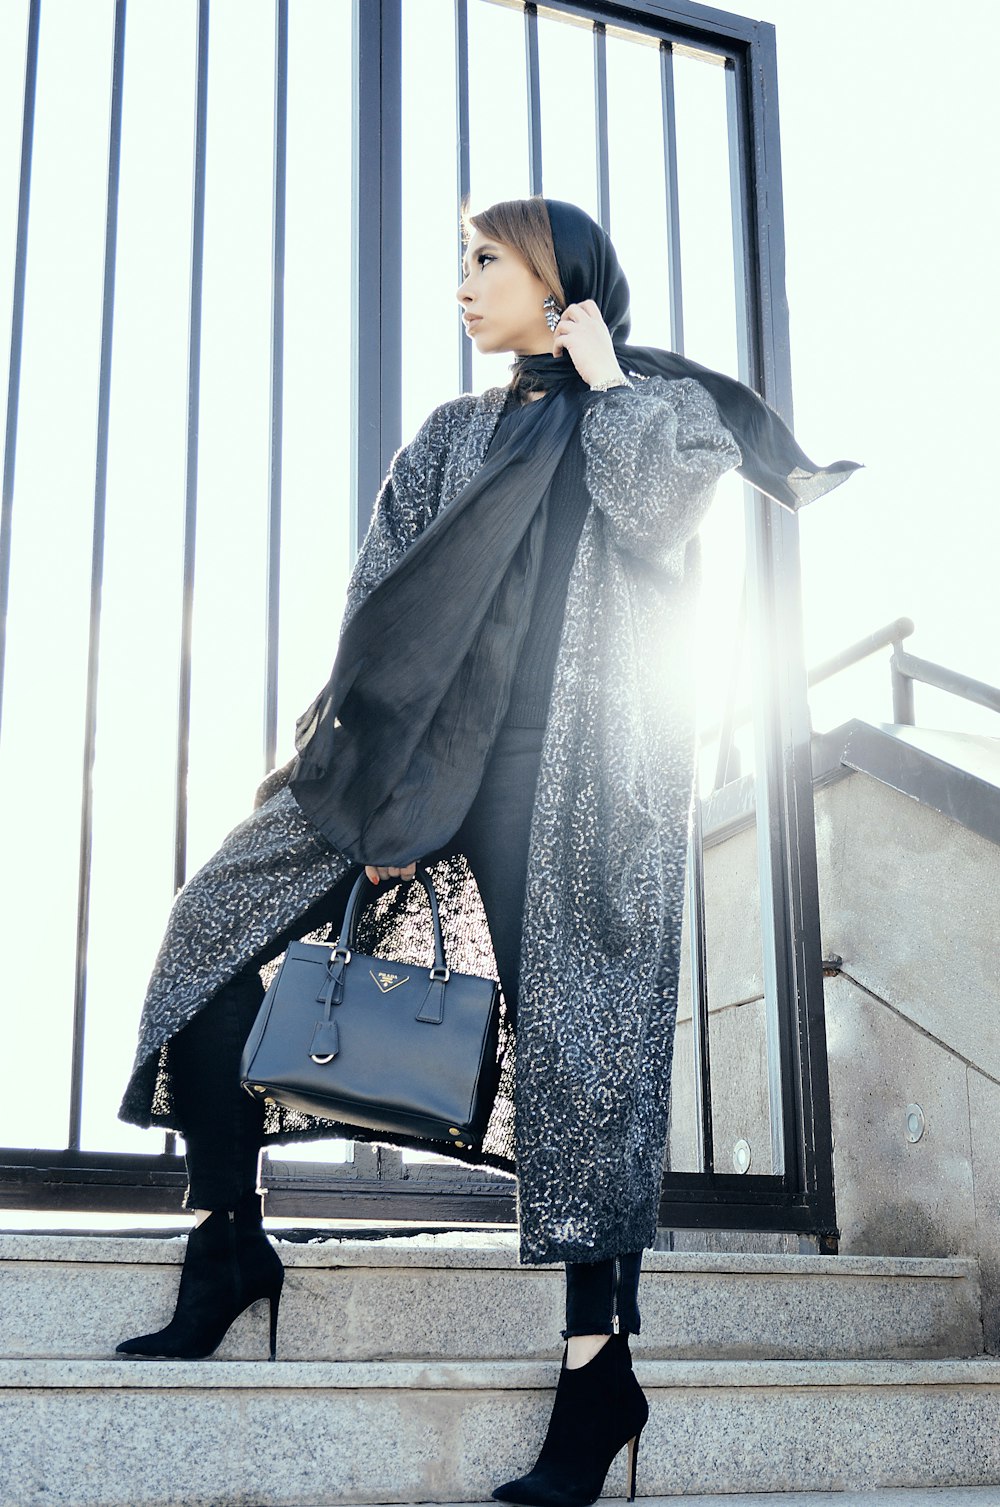 Femme en manteau gris tenant un sac à main noir debout sur des escaliers gris pendant la journée